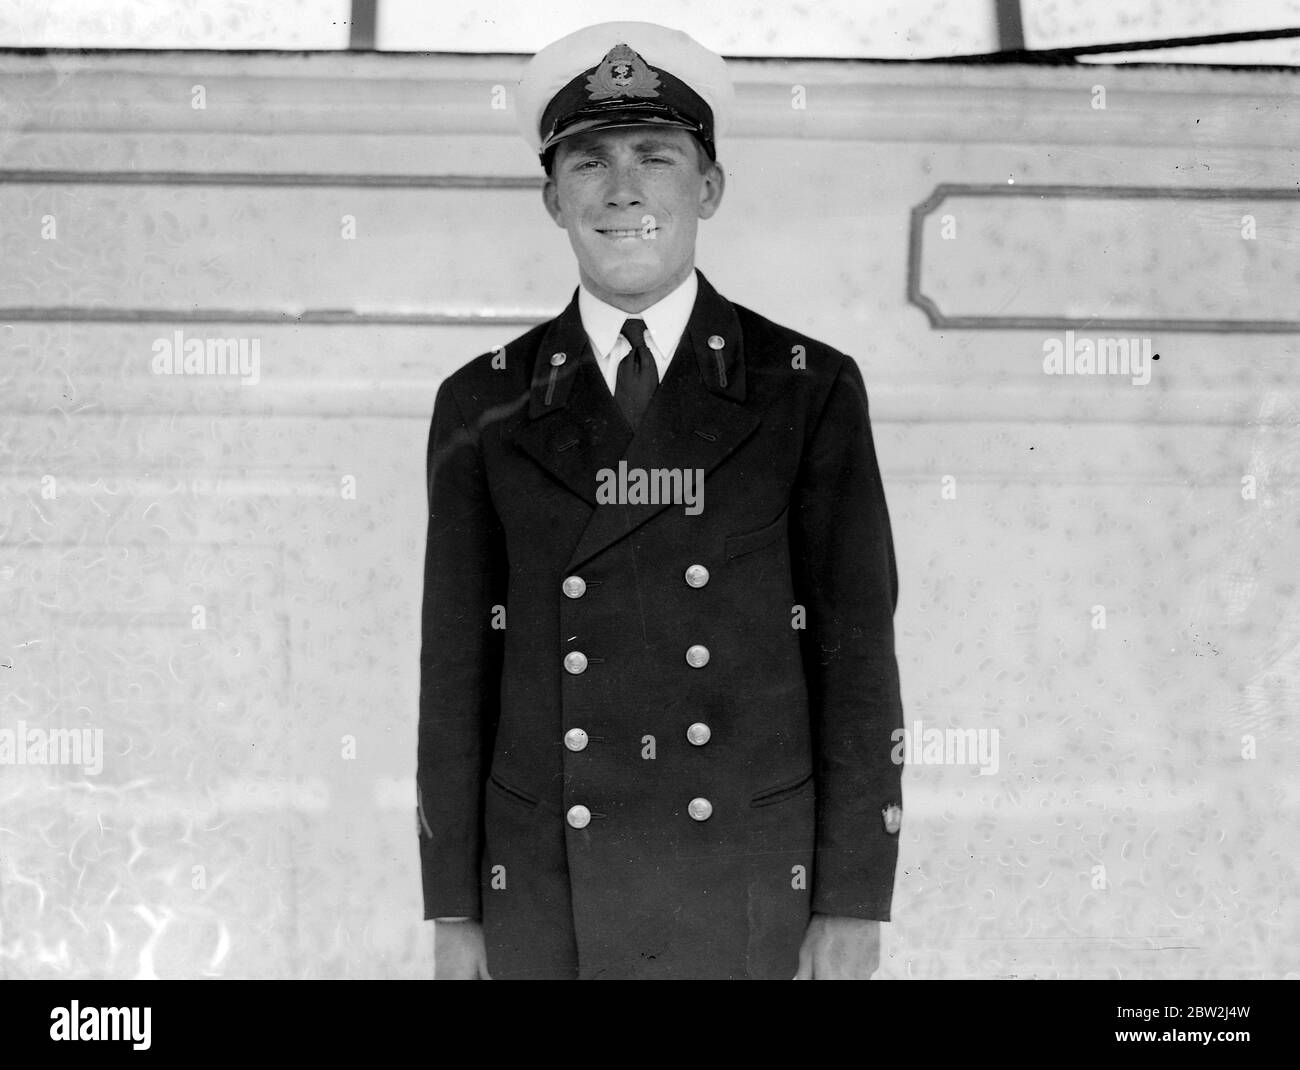 Auf dem Trainingsschiff H.M.S. Worcester, Greenhithe, Kent. Cadet R. N. Wilson, der die King's Medal. Die Medaille wird dem Kadett verliehen, der nach Meinung seiner Kollegen die segelähnlichsten Qualitäten besitzt. 16 Juli 1932 Stockfoto